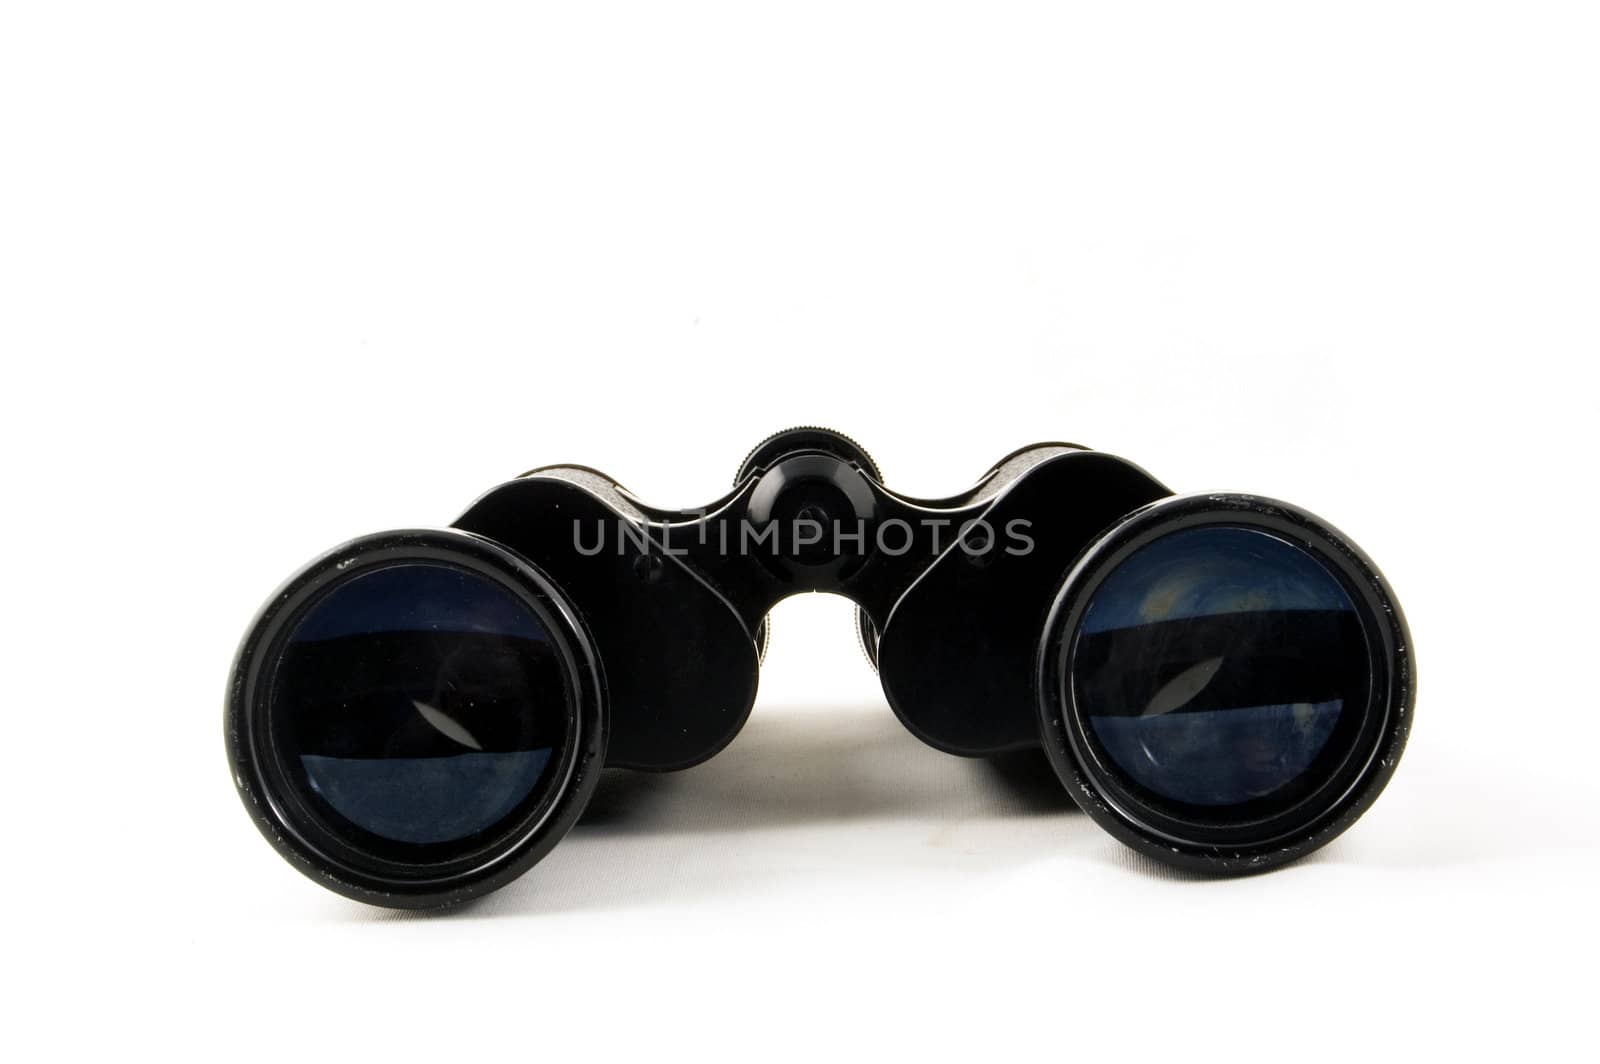 binocular on white background

